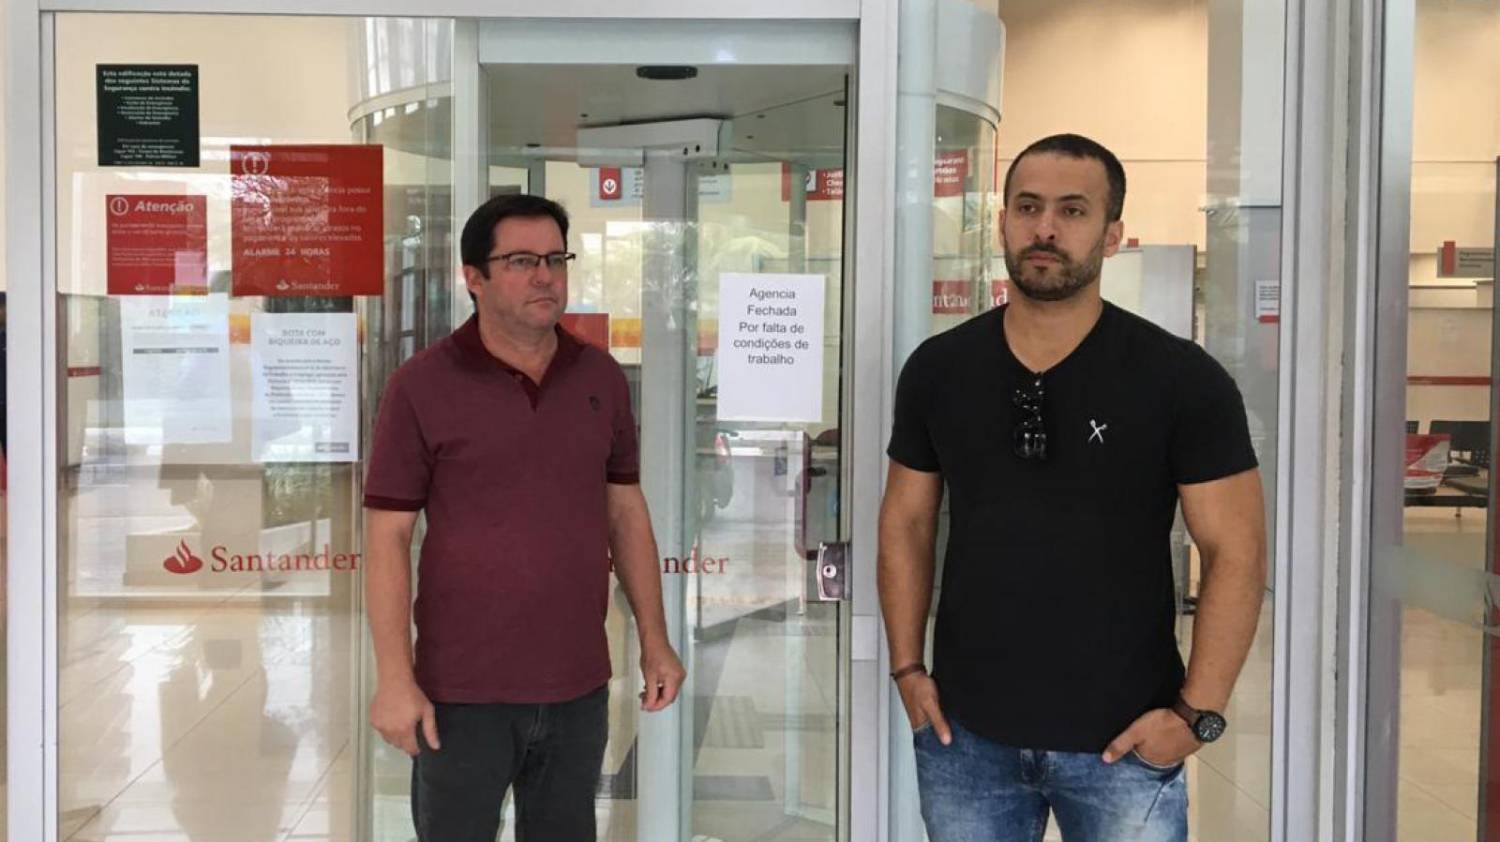 Agência Santander em Guarujá é fechada por não ter condições de trabalho